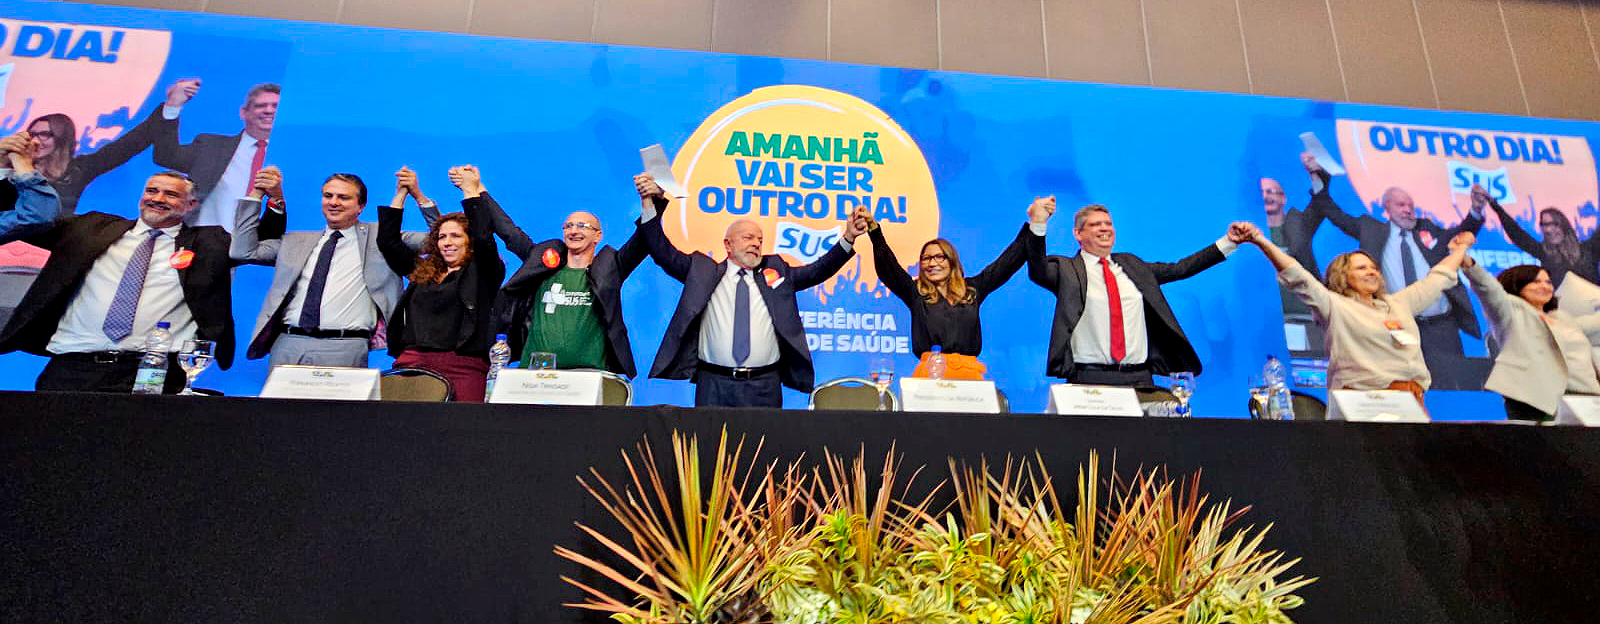 17ª Conferência Nacional de Saúde (CNS) terminou com a presença do presidente Lula e diversos ministros e ministras